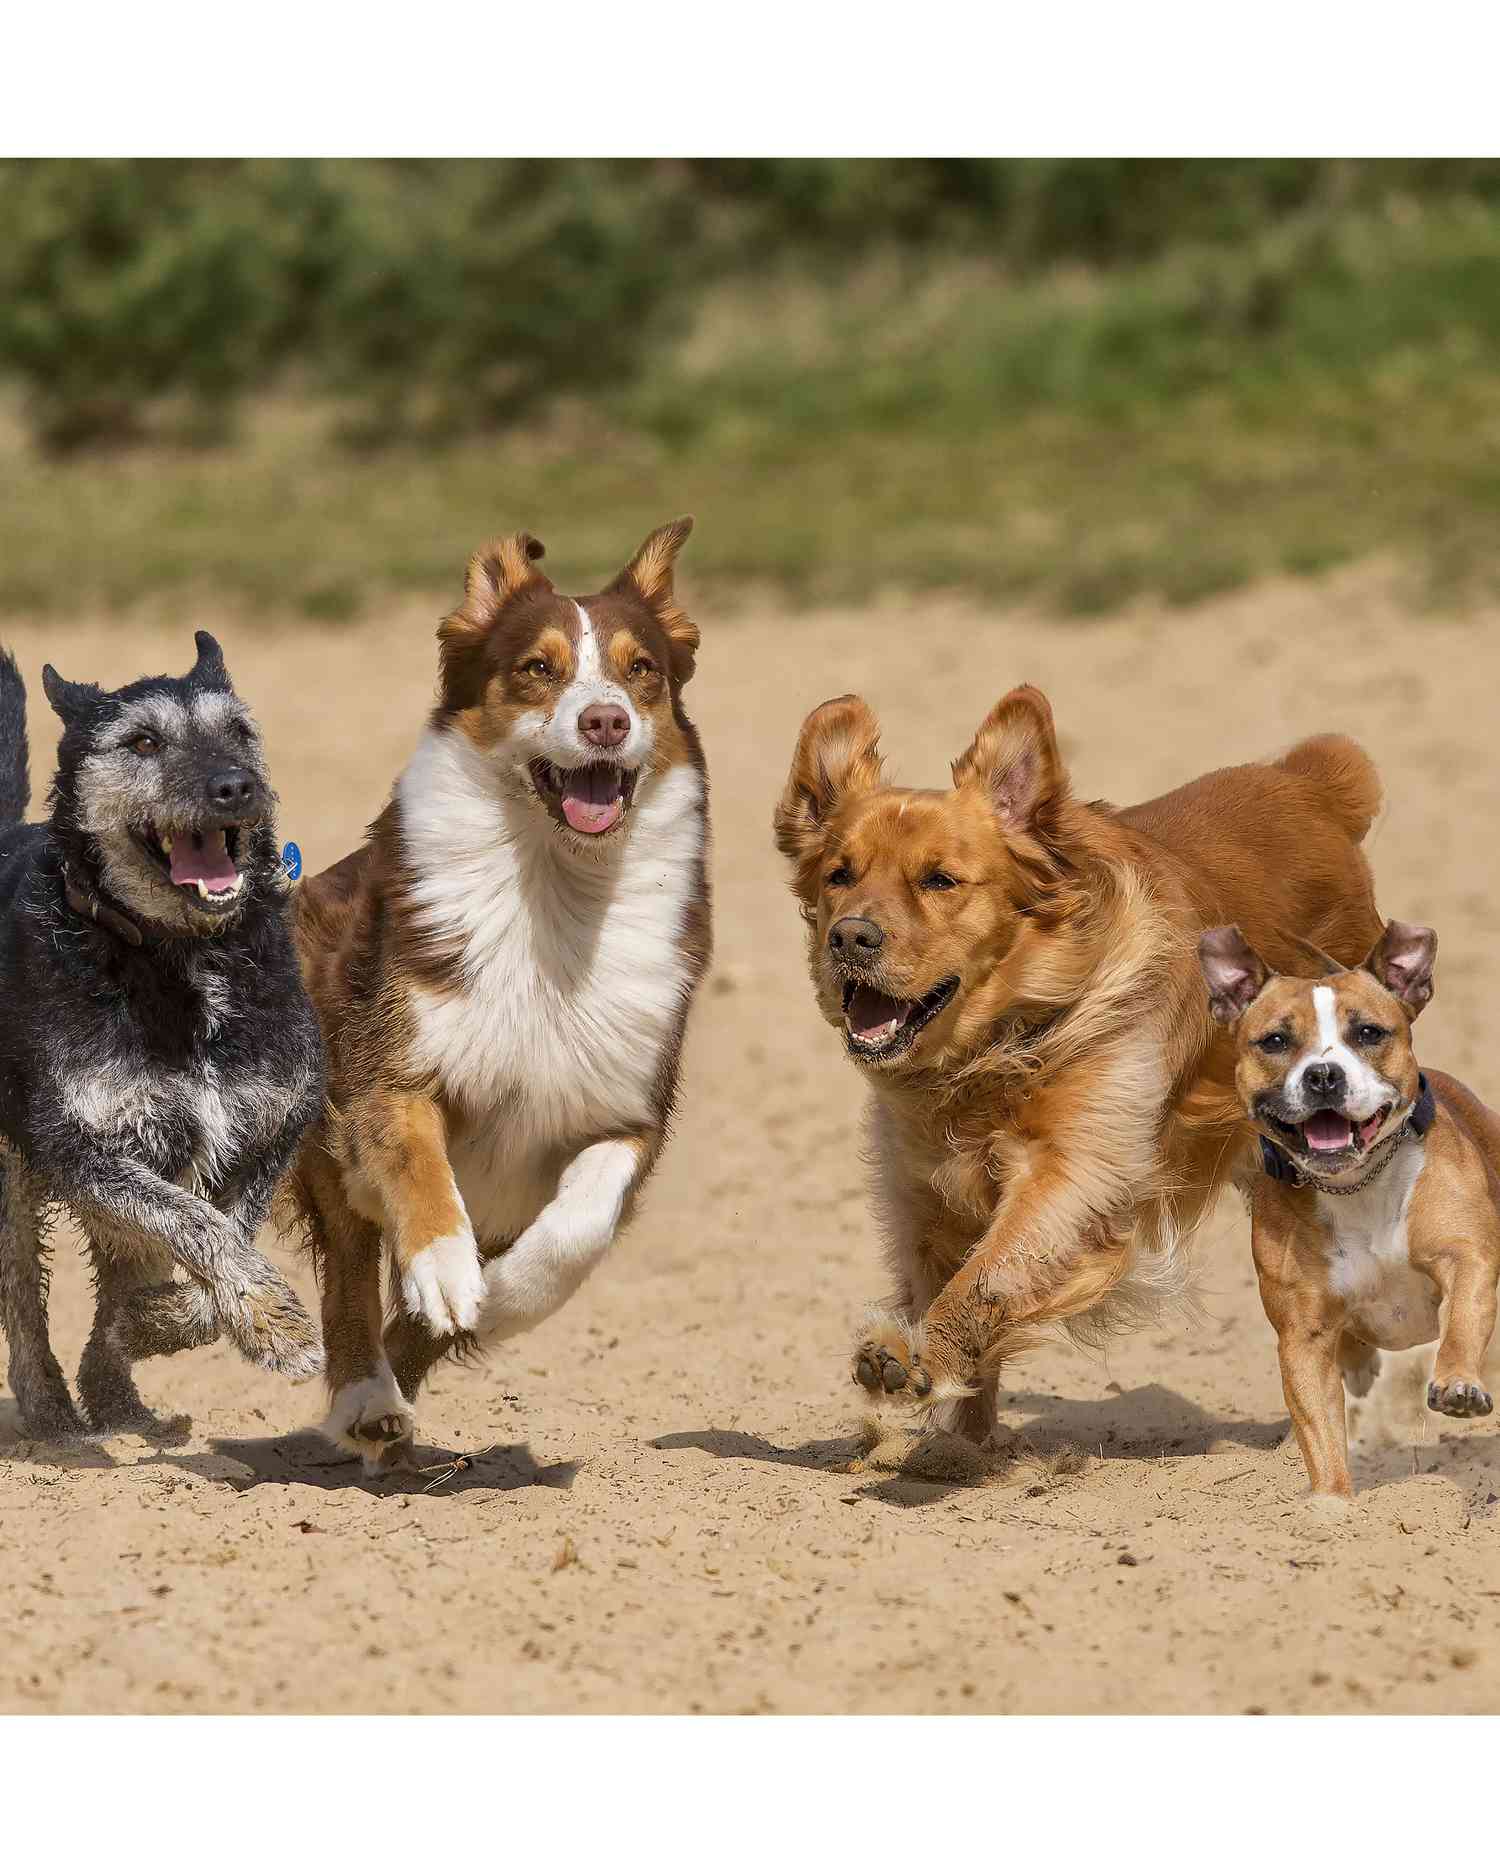 dogs-running-at-dog-park.jpg